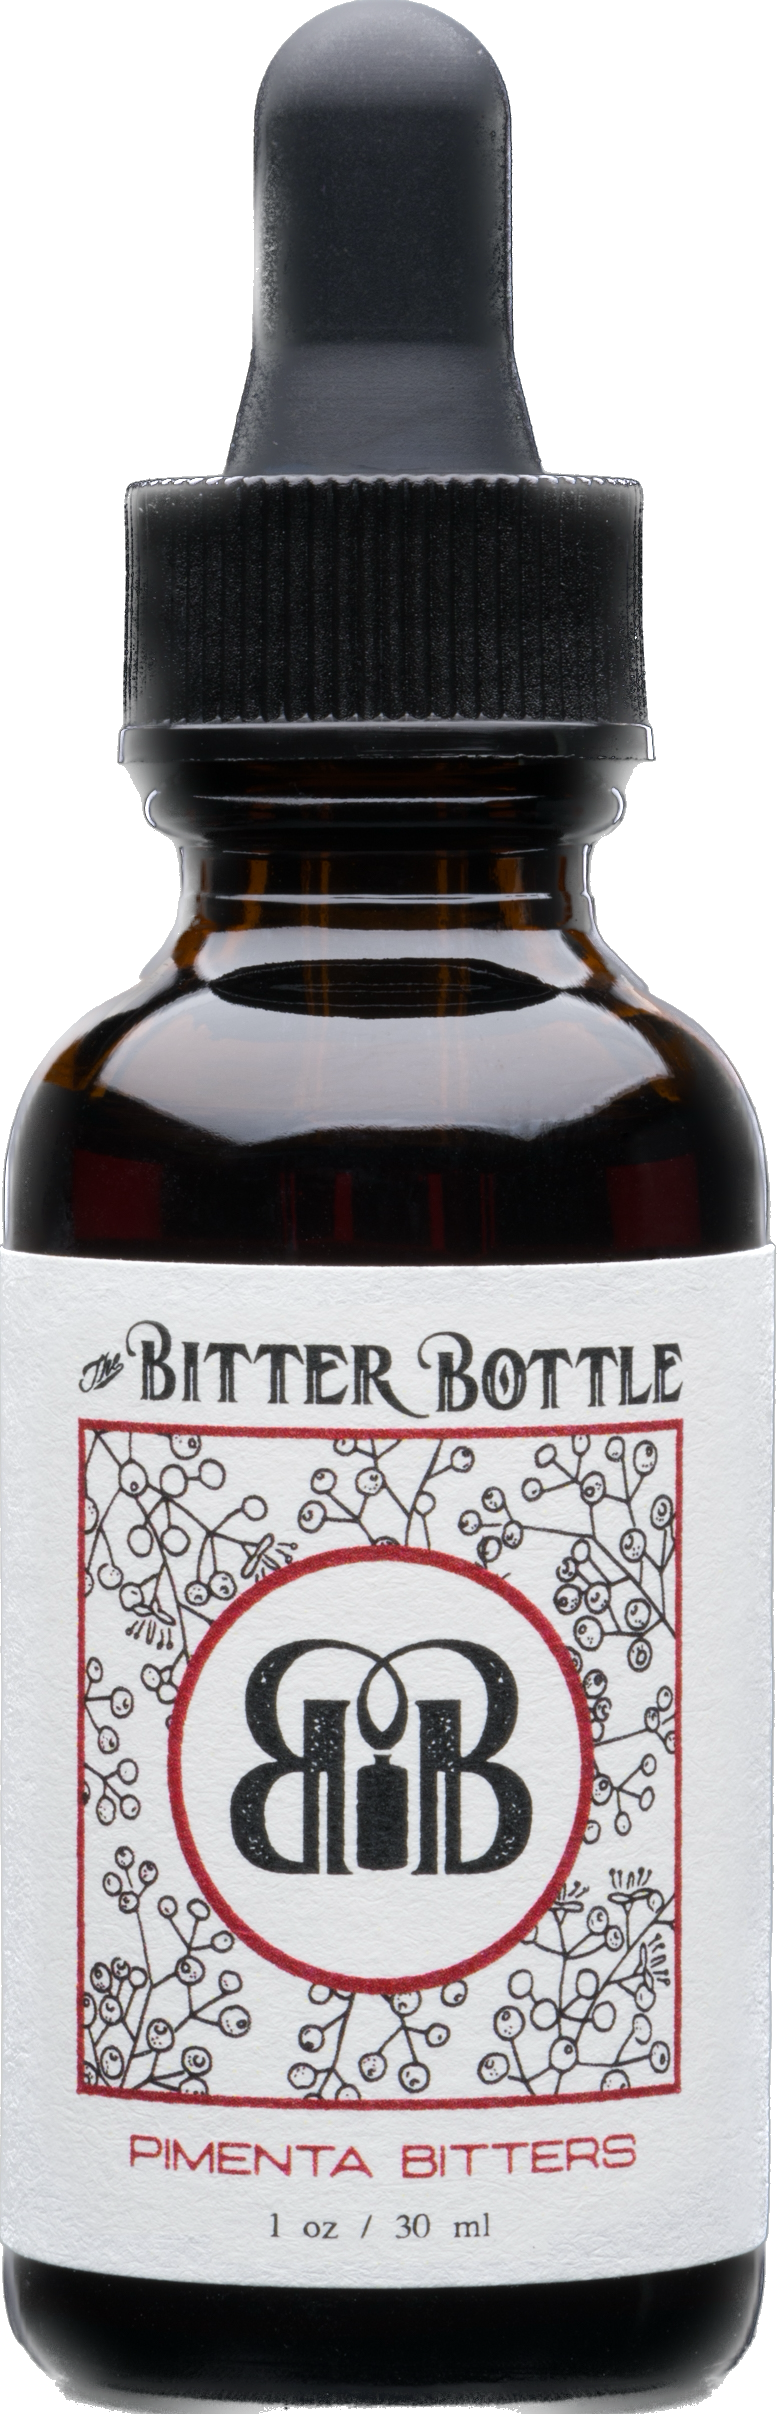 The Bitter Bottle: Pimenta Bitters